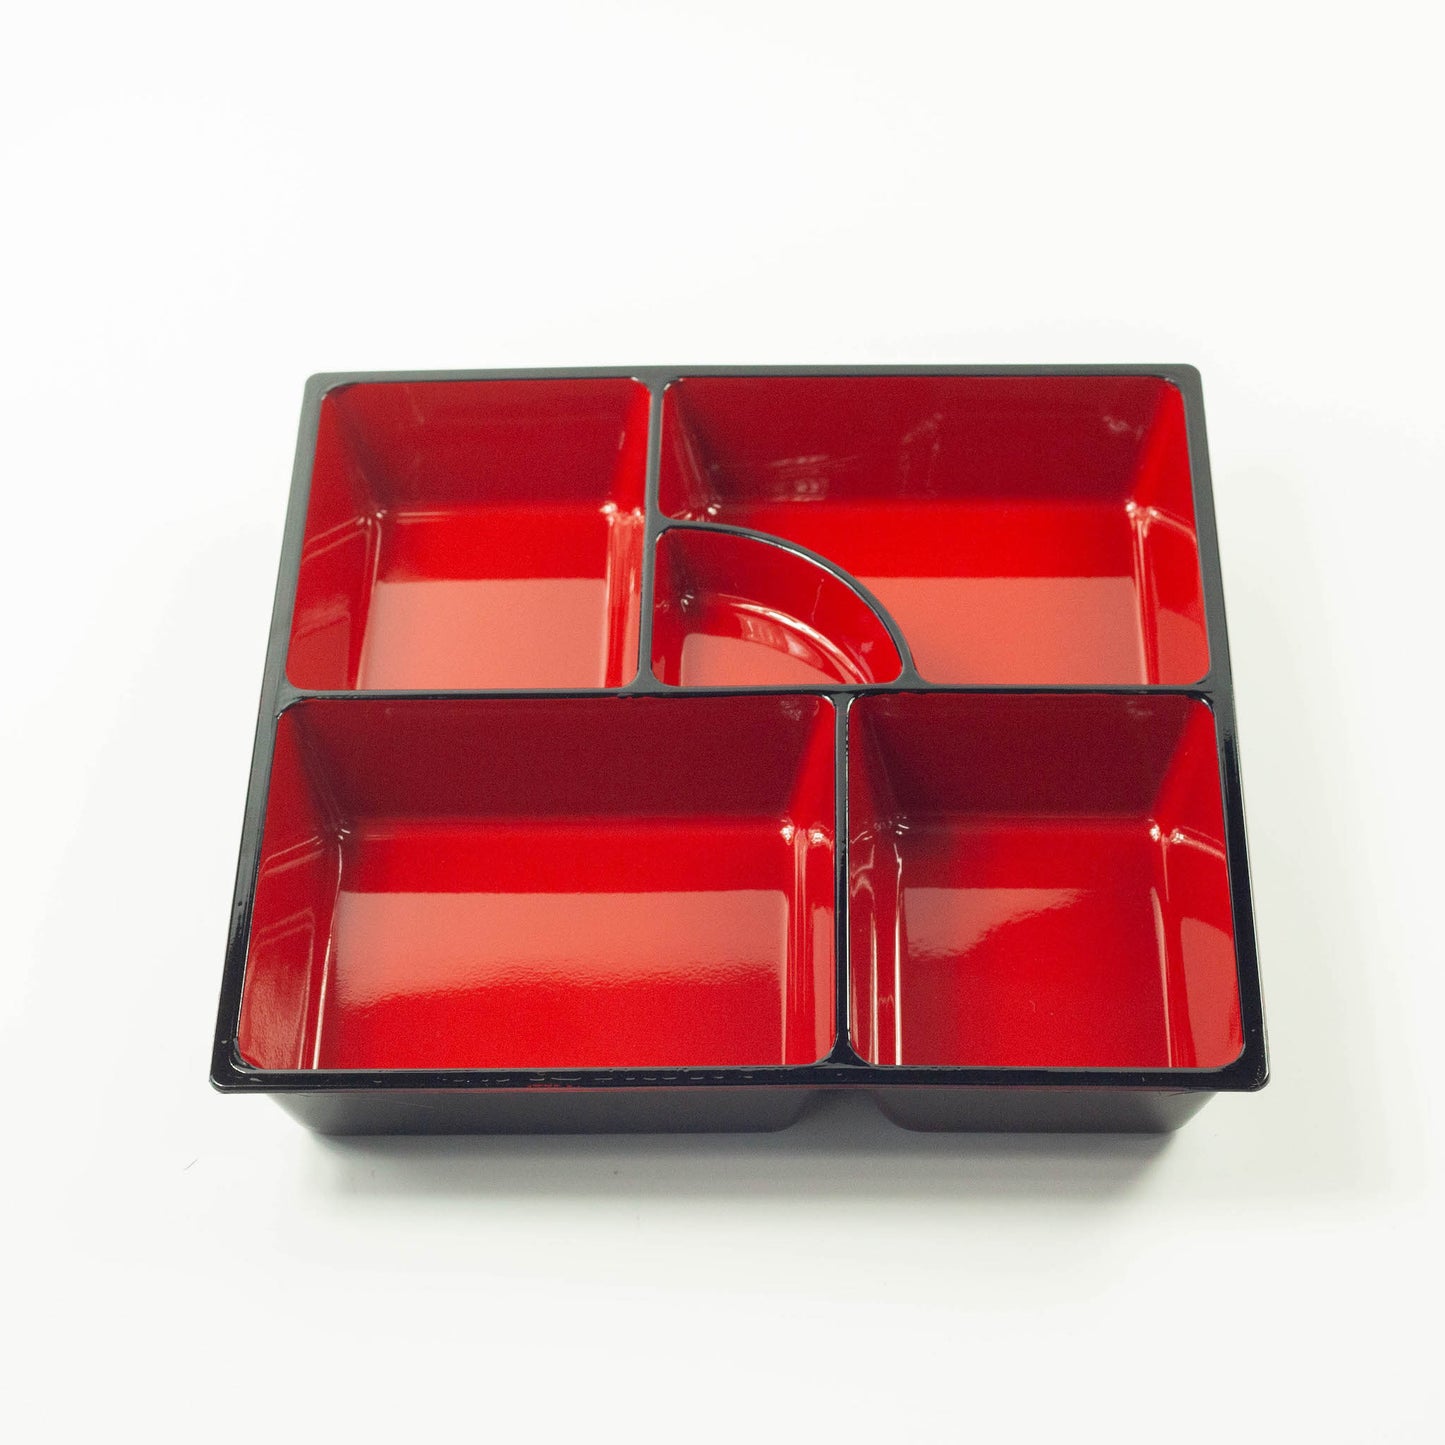 Shokado Kaga Bento Box (22.5 x 22.5)